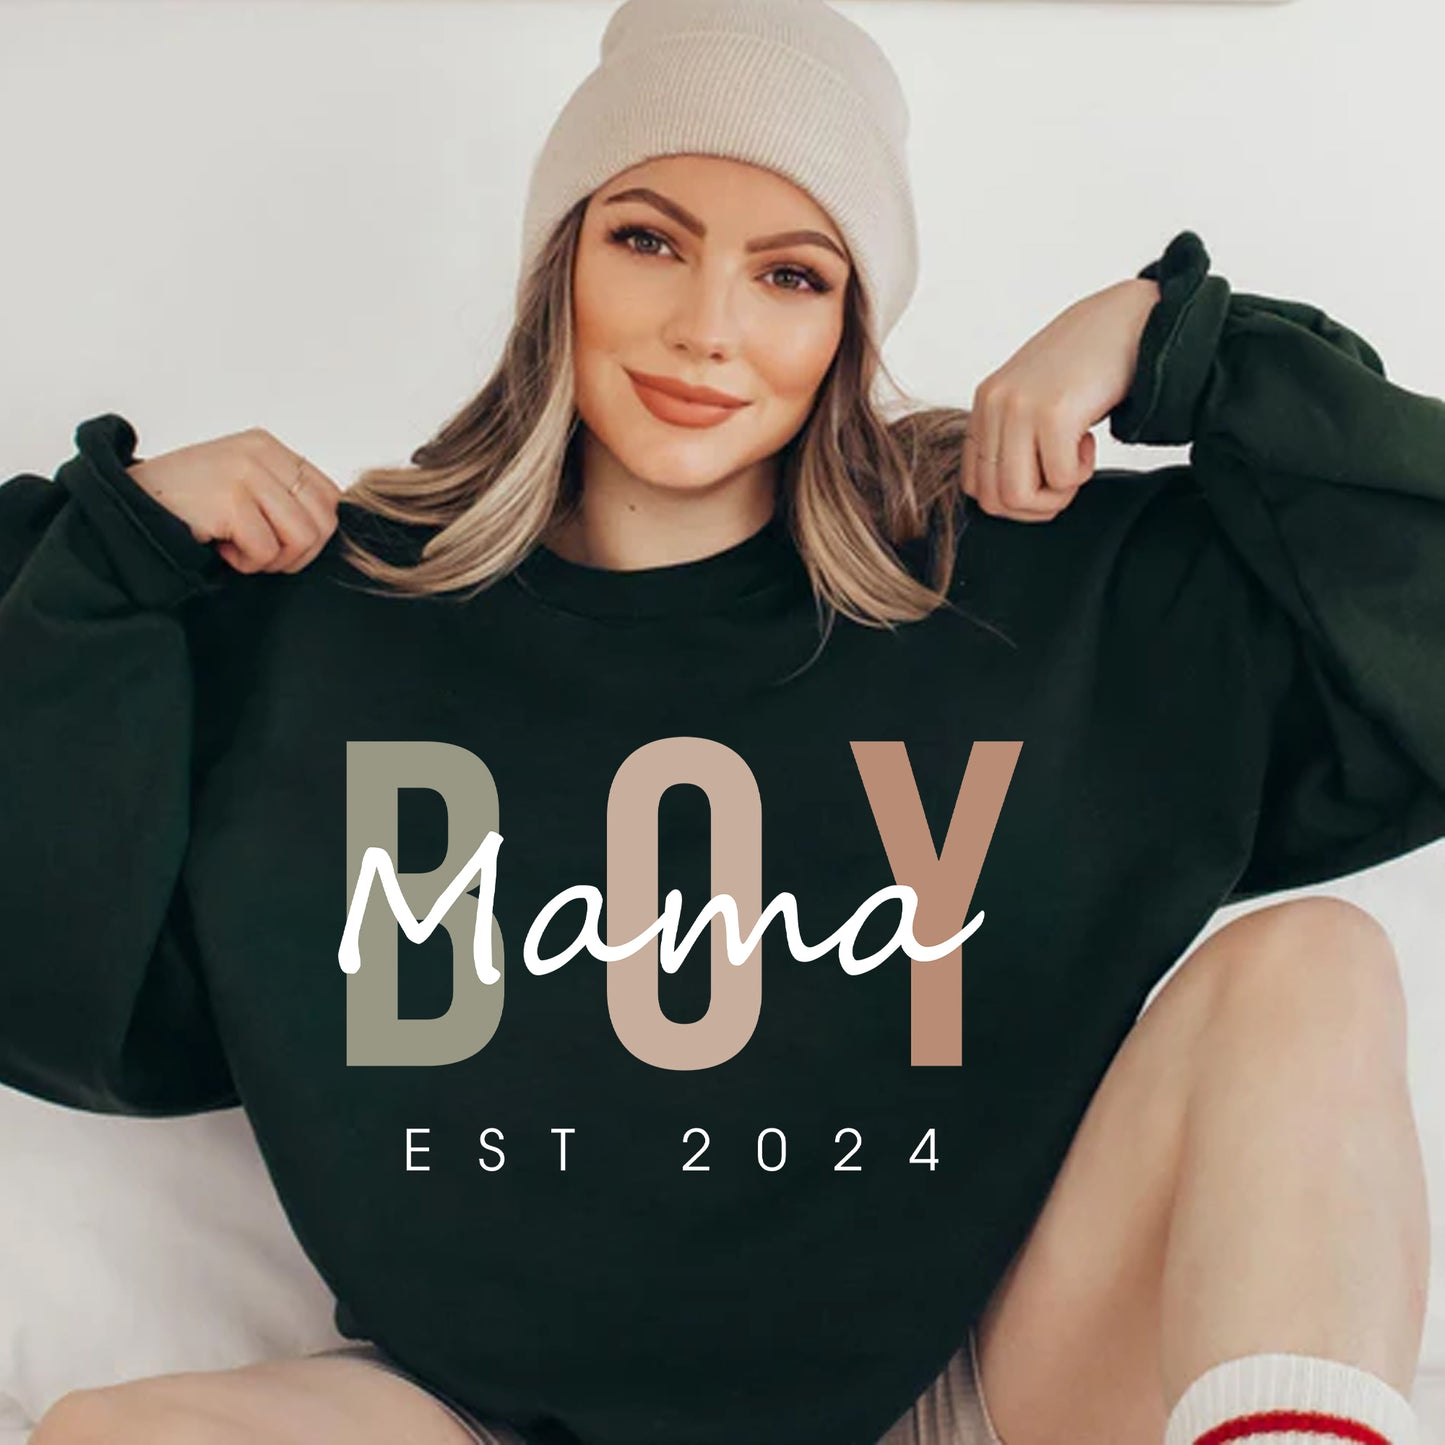 Personalisiertes Mama Shirts und Sweatshirt, Geschenk für die Mutter eines Jungen